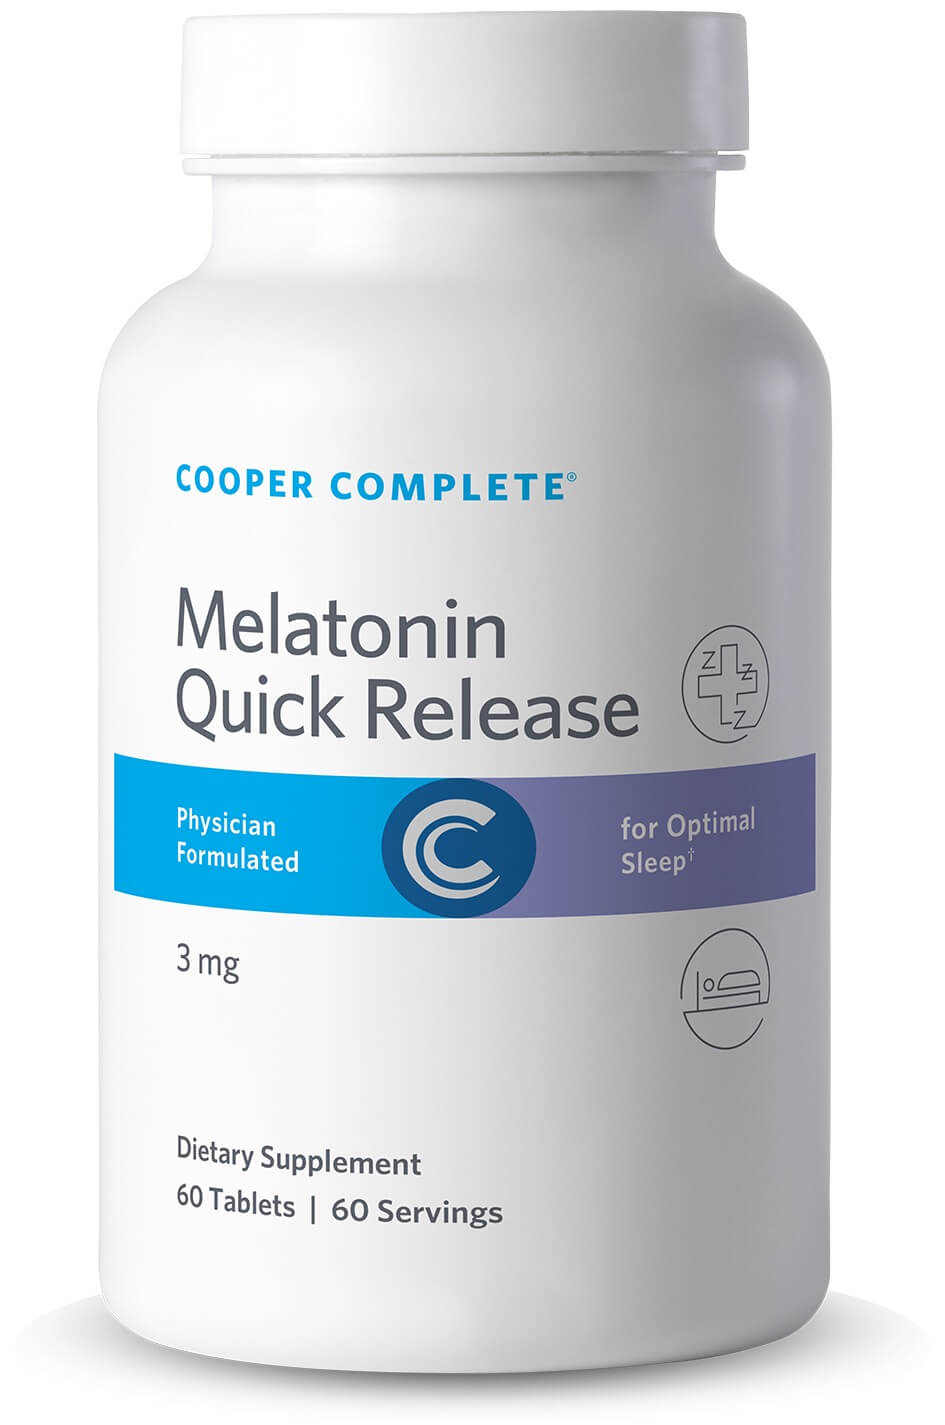 Photo of Cooper Complete 3 mg Melatonin Quick Release Supplement bottle.